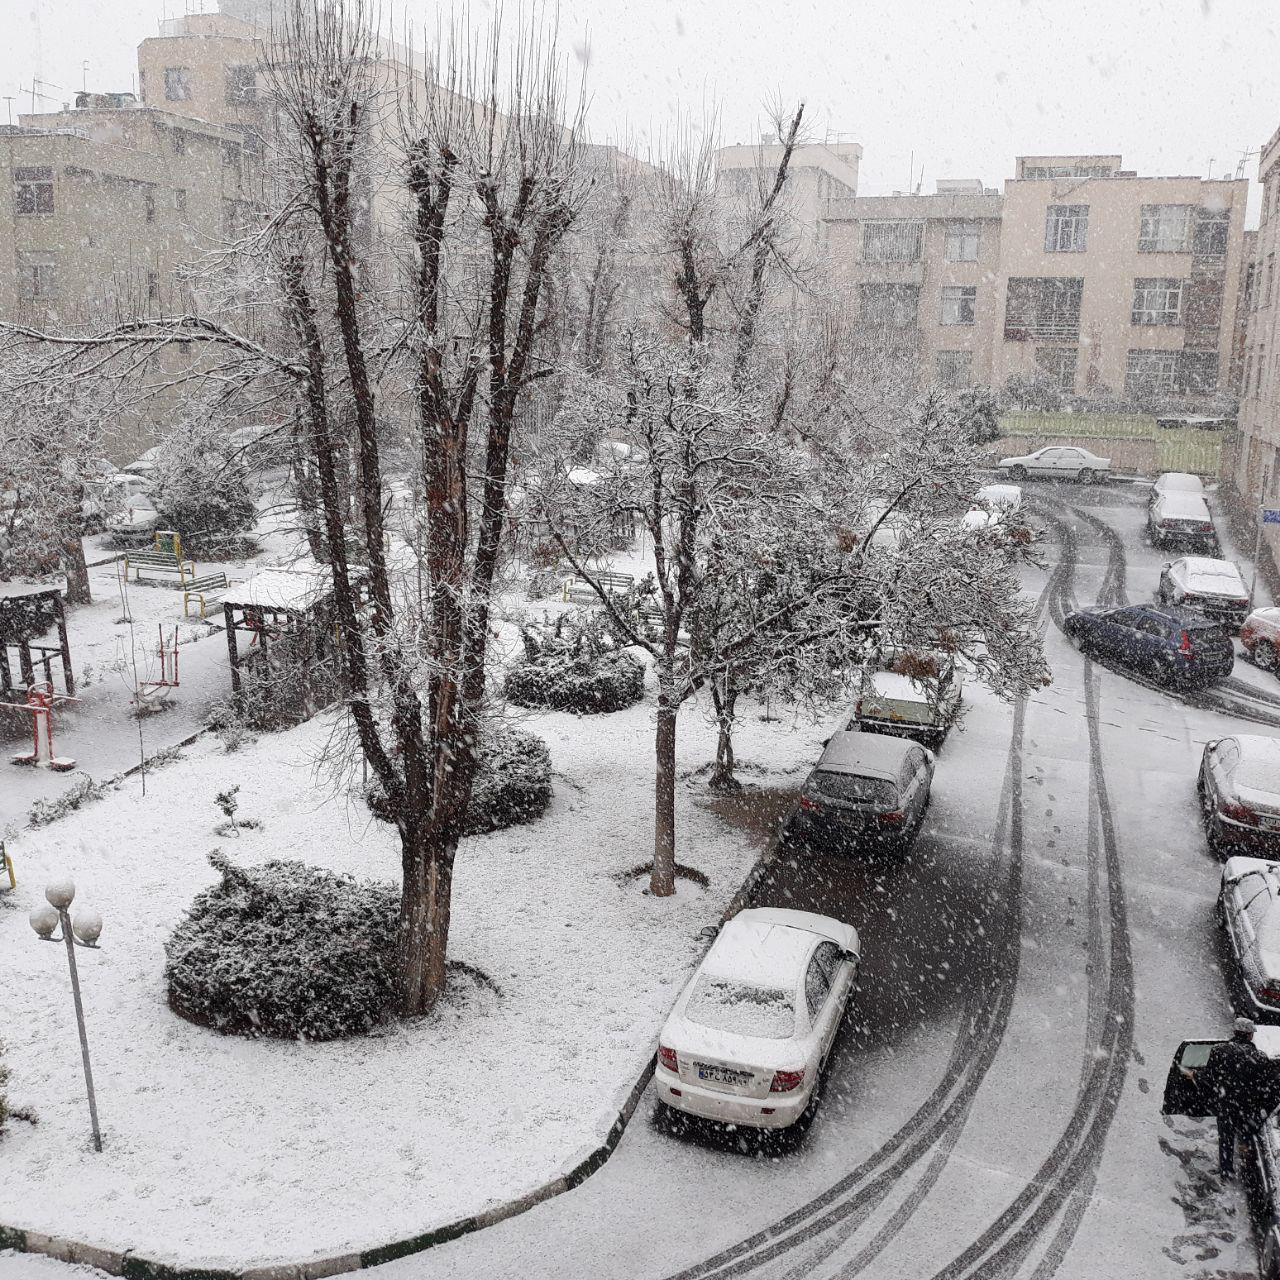  			 				 					بارش برف در تهران 				 			 		